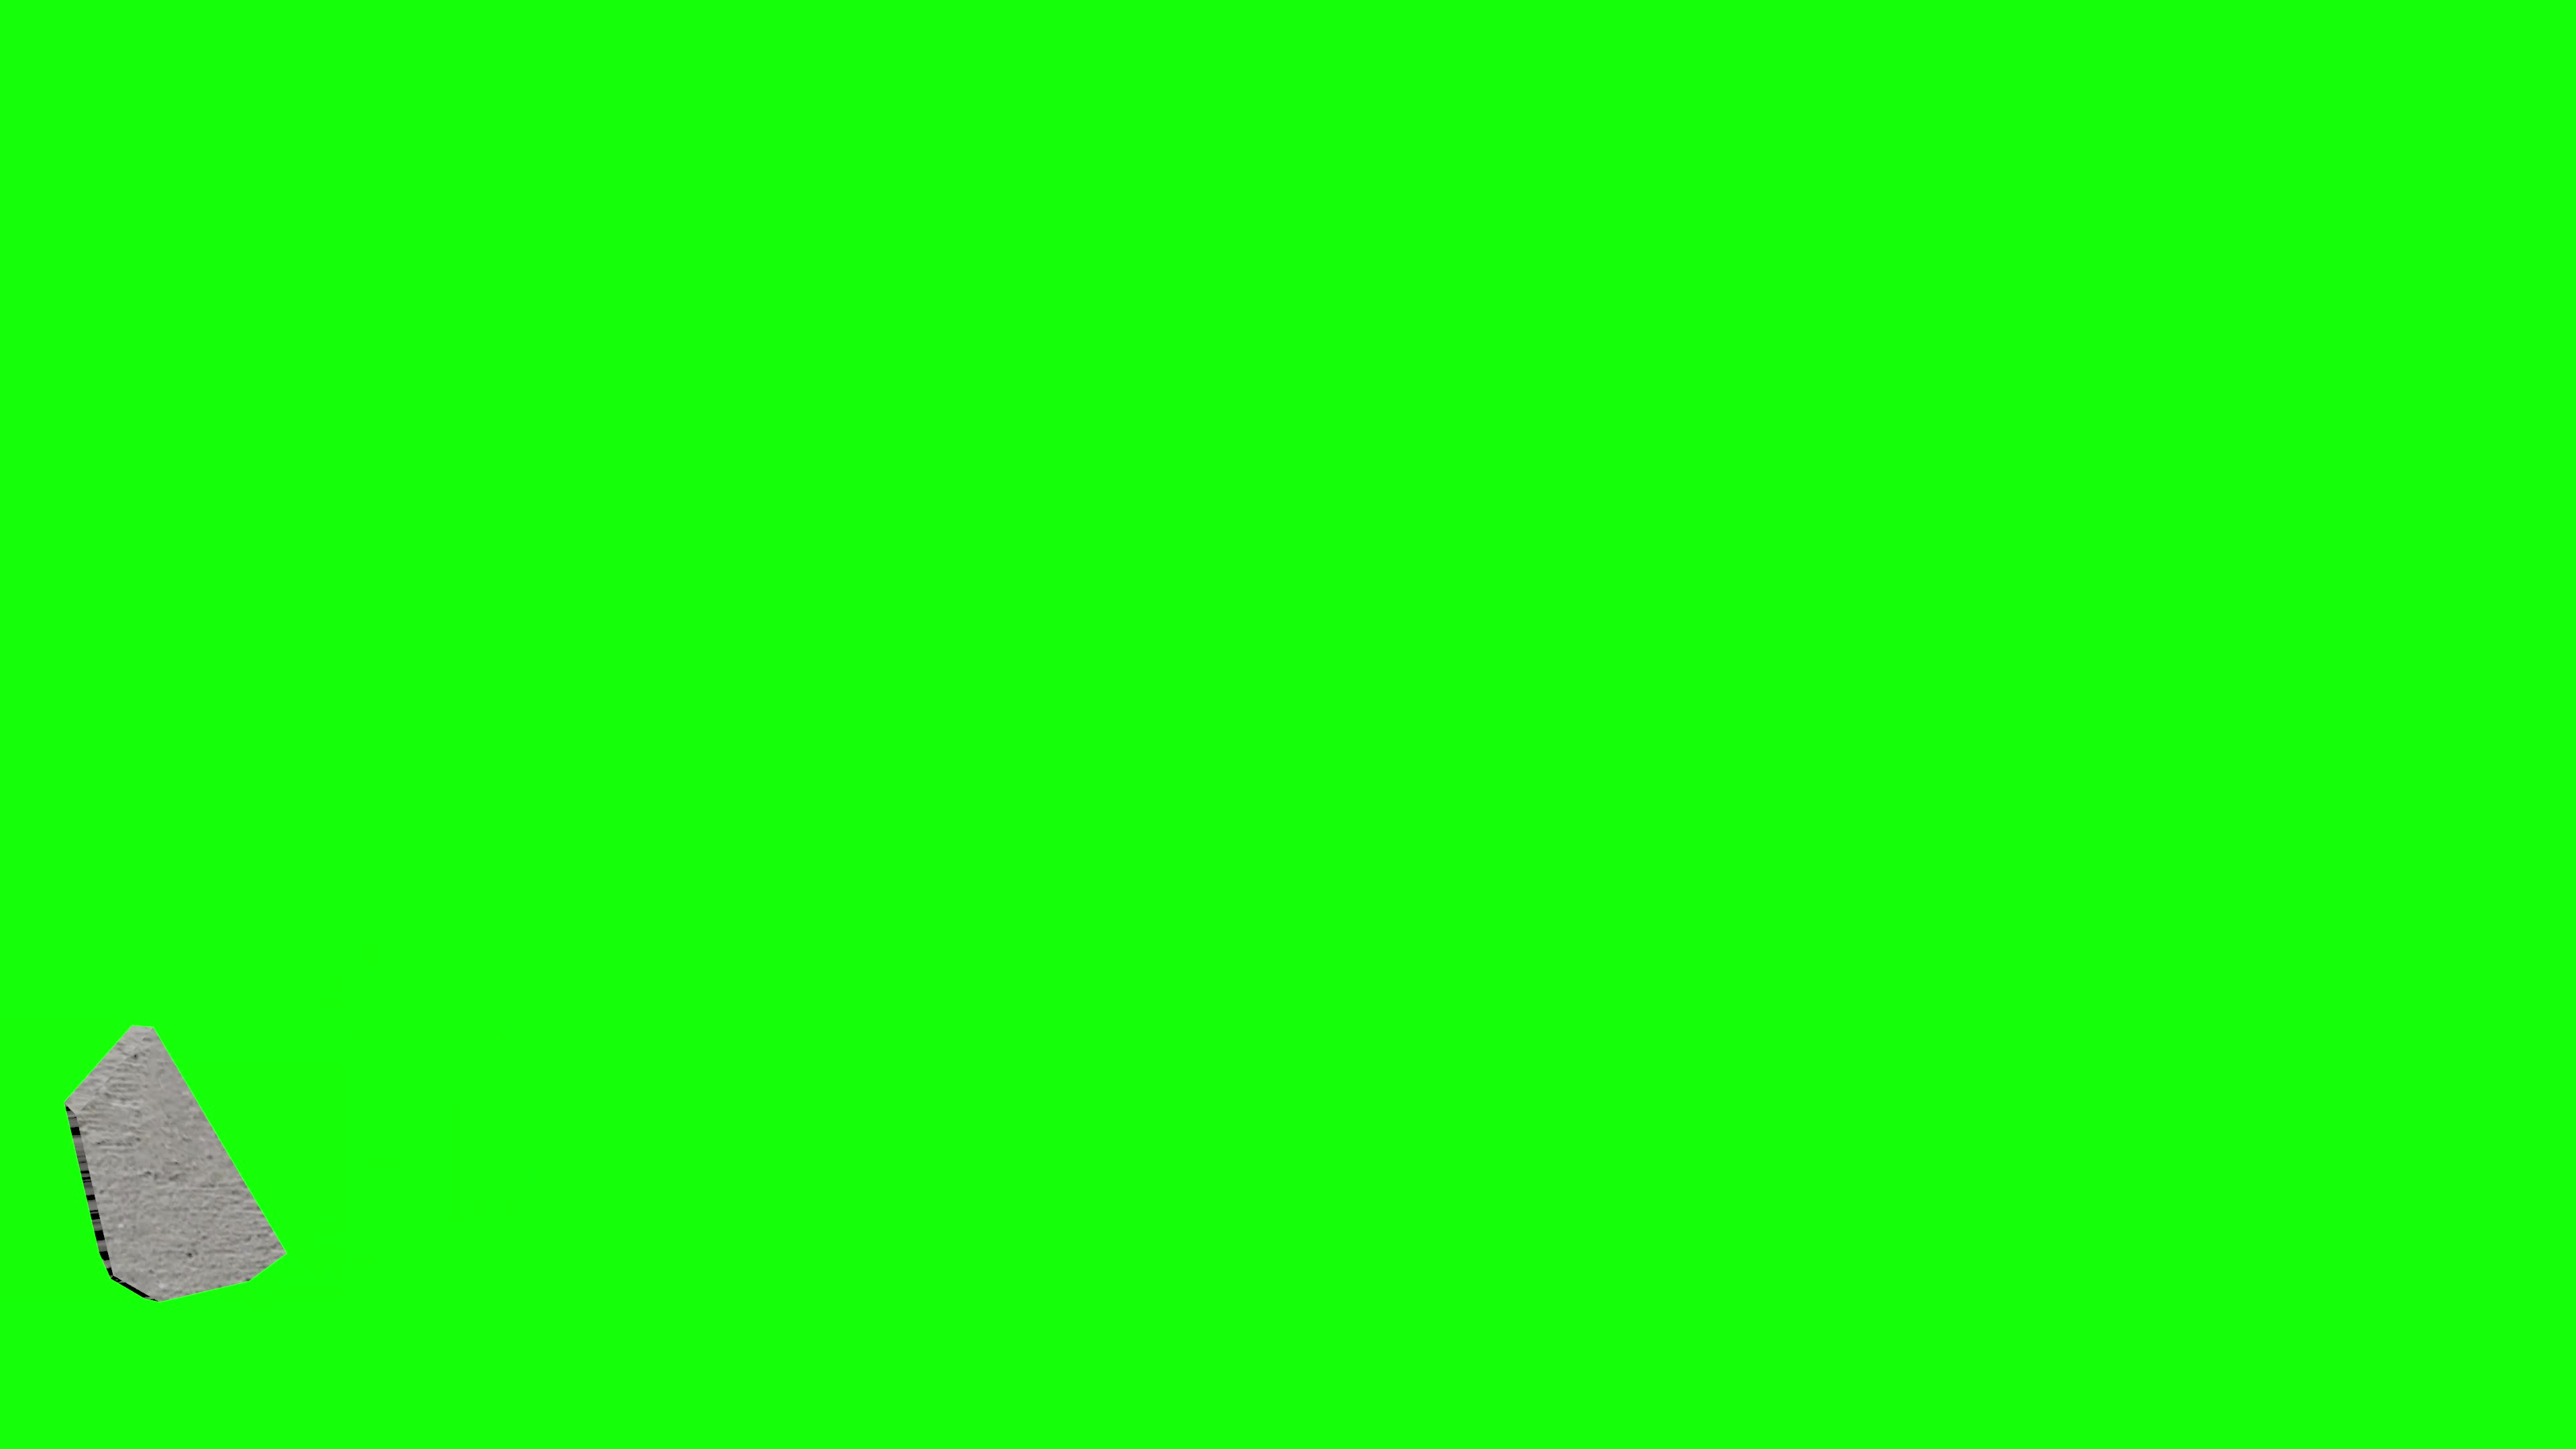 Chia màn hình - Màn hình xanh lá cây: Tạo sự đẹp cho video của bạn bằng cách chia đôi màn hình với màn hình xanh lá cây. Khám phá ngay hình ảnh đẹp mắt để có cách trình bày nội dung mới lạ hơn bao giờ hết.